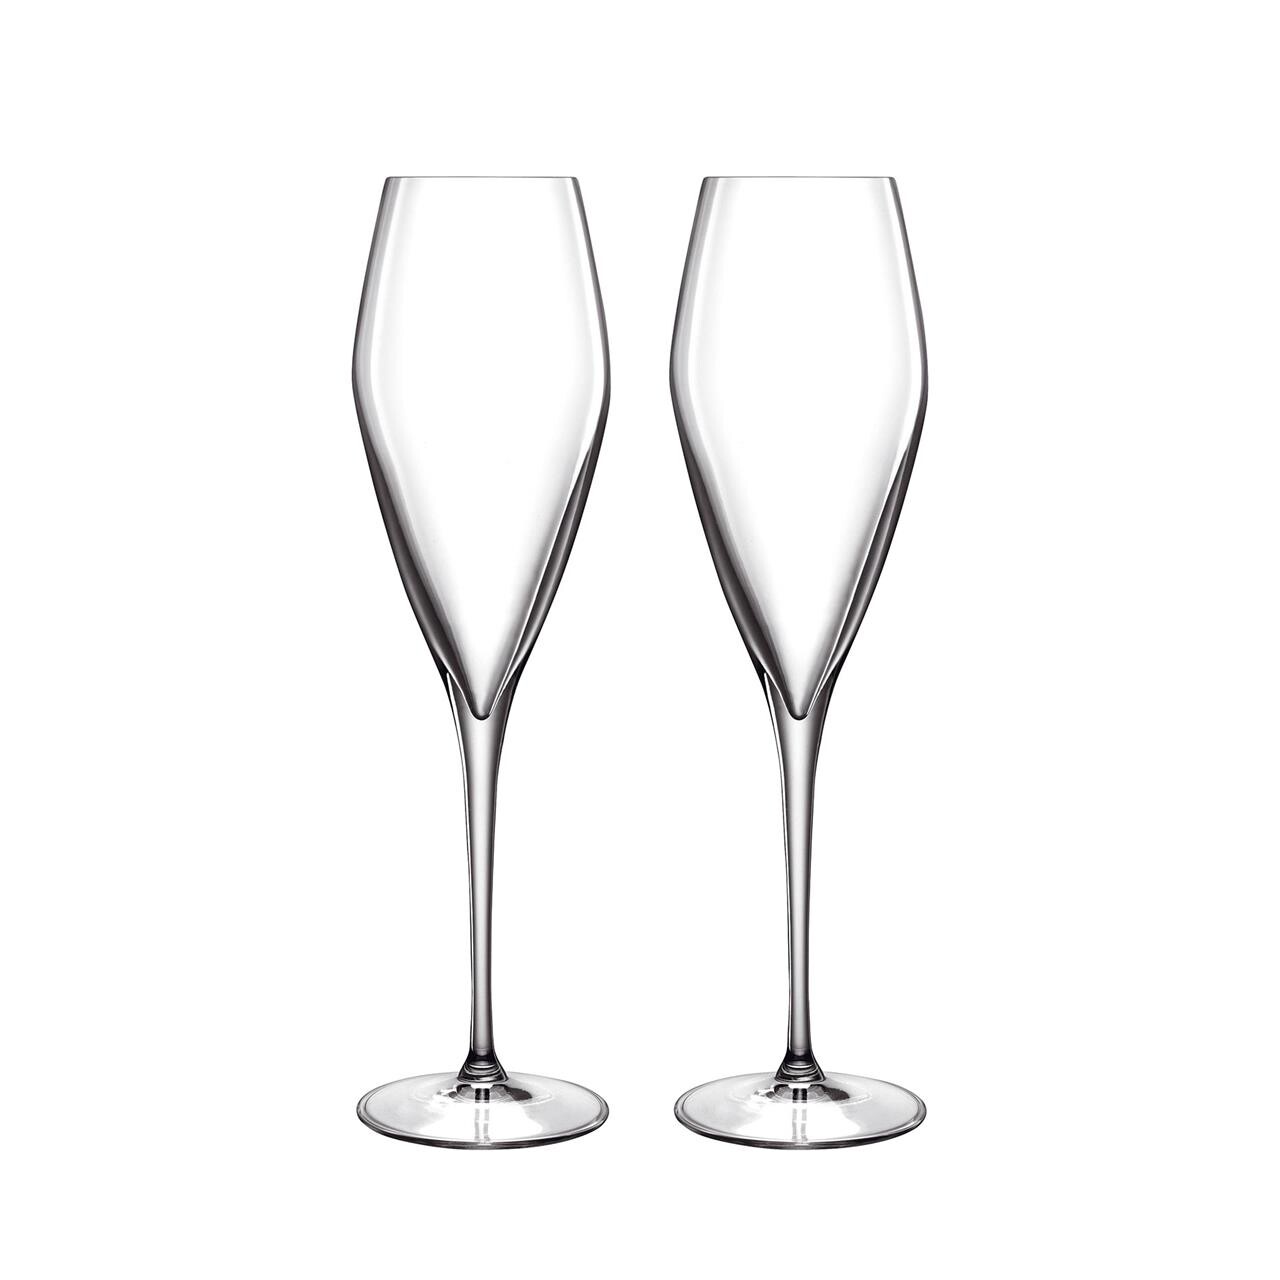 LUIGI BORMIOLI Atelier prosecco champagneglas 27 cl 2 stk